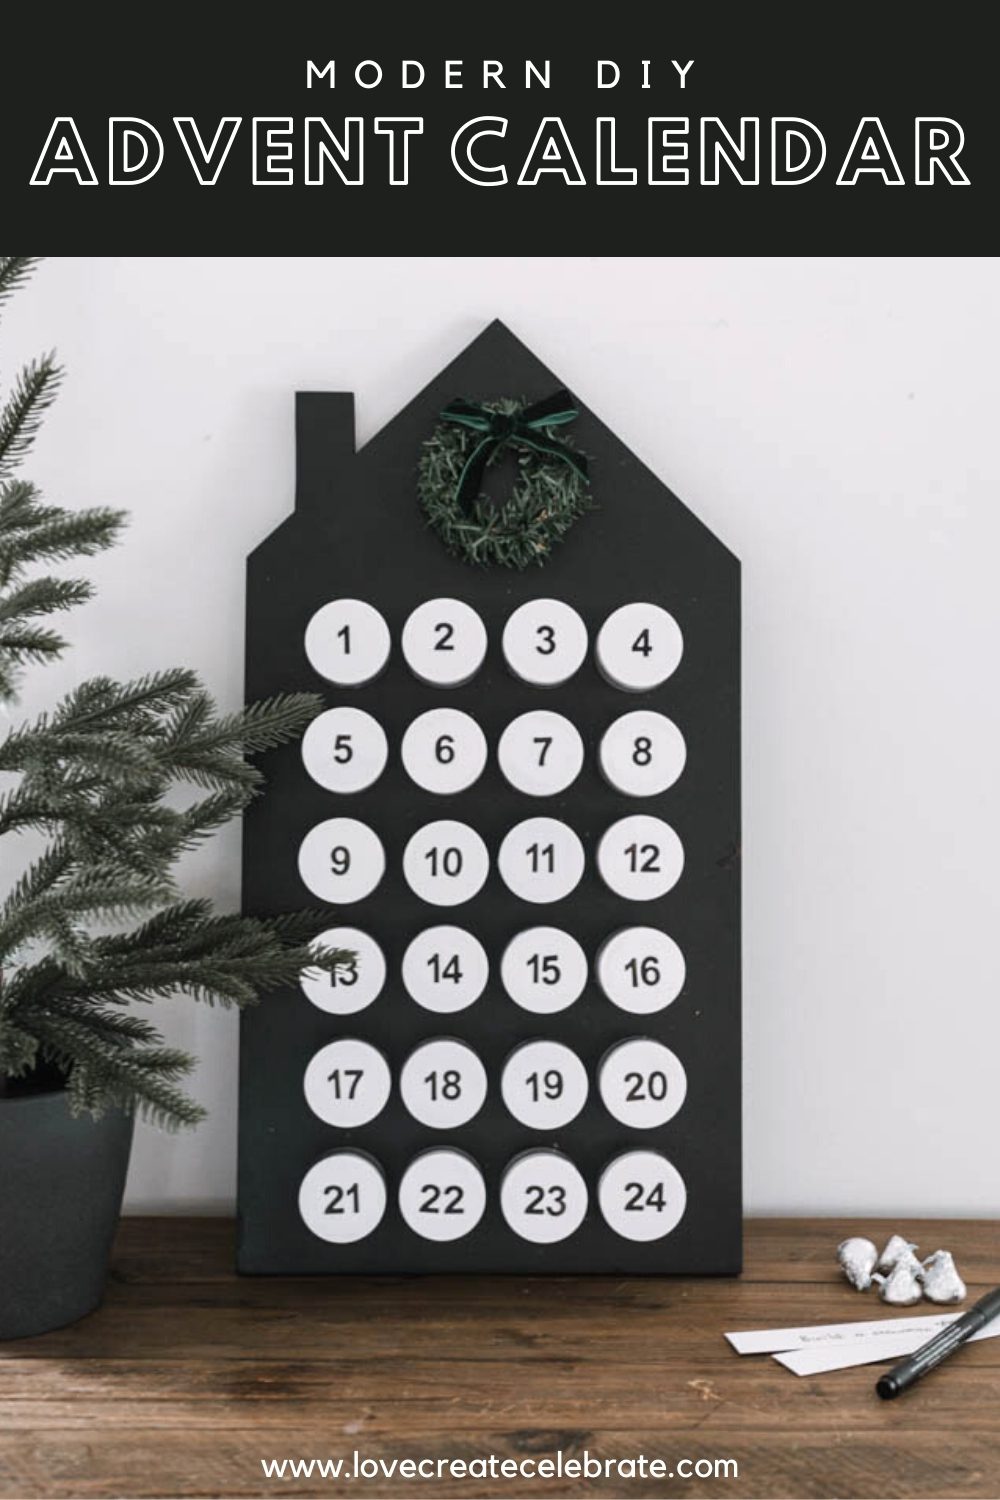 DIY advent calendar with text overlay